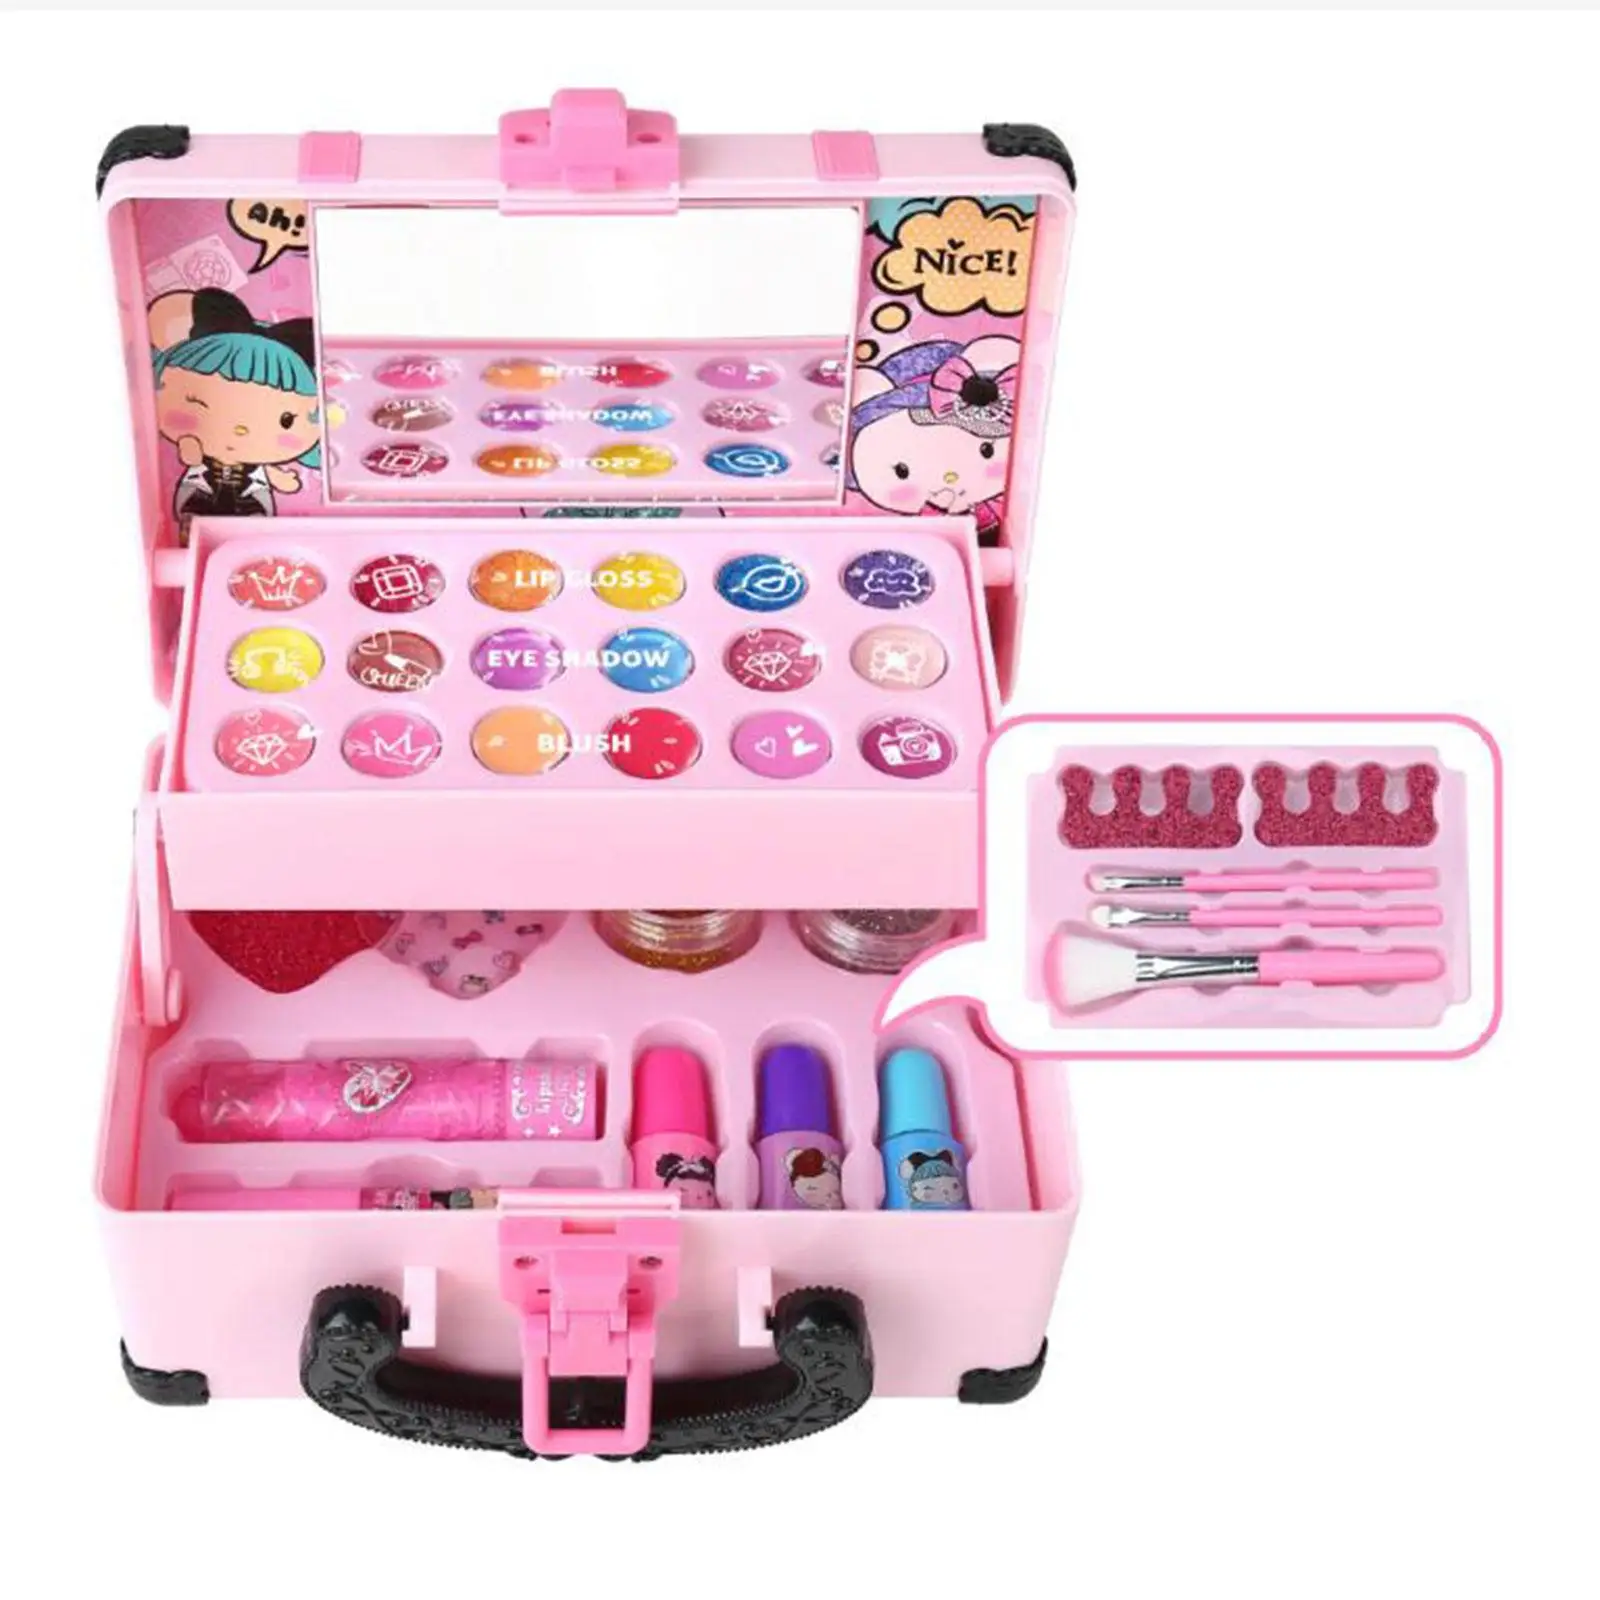 Cosmetics Makeup Toy Set Dresser Toy Pretend Makeup Accessories Pretend Play Makeup Toy Set for Girls Toddlers Children Kids